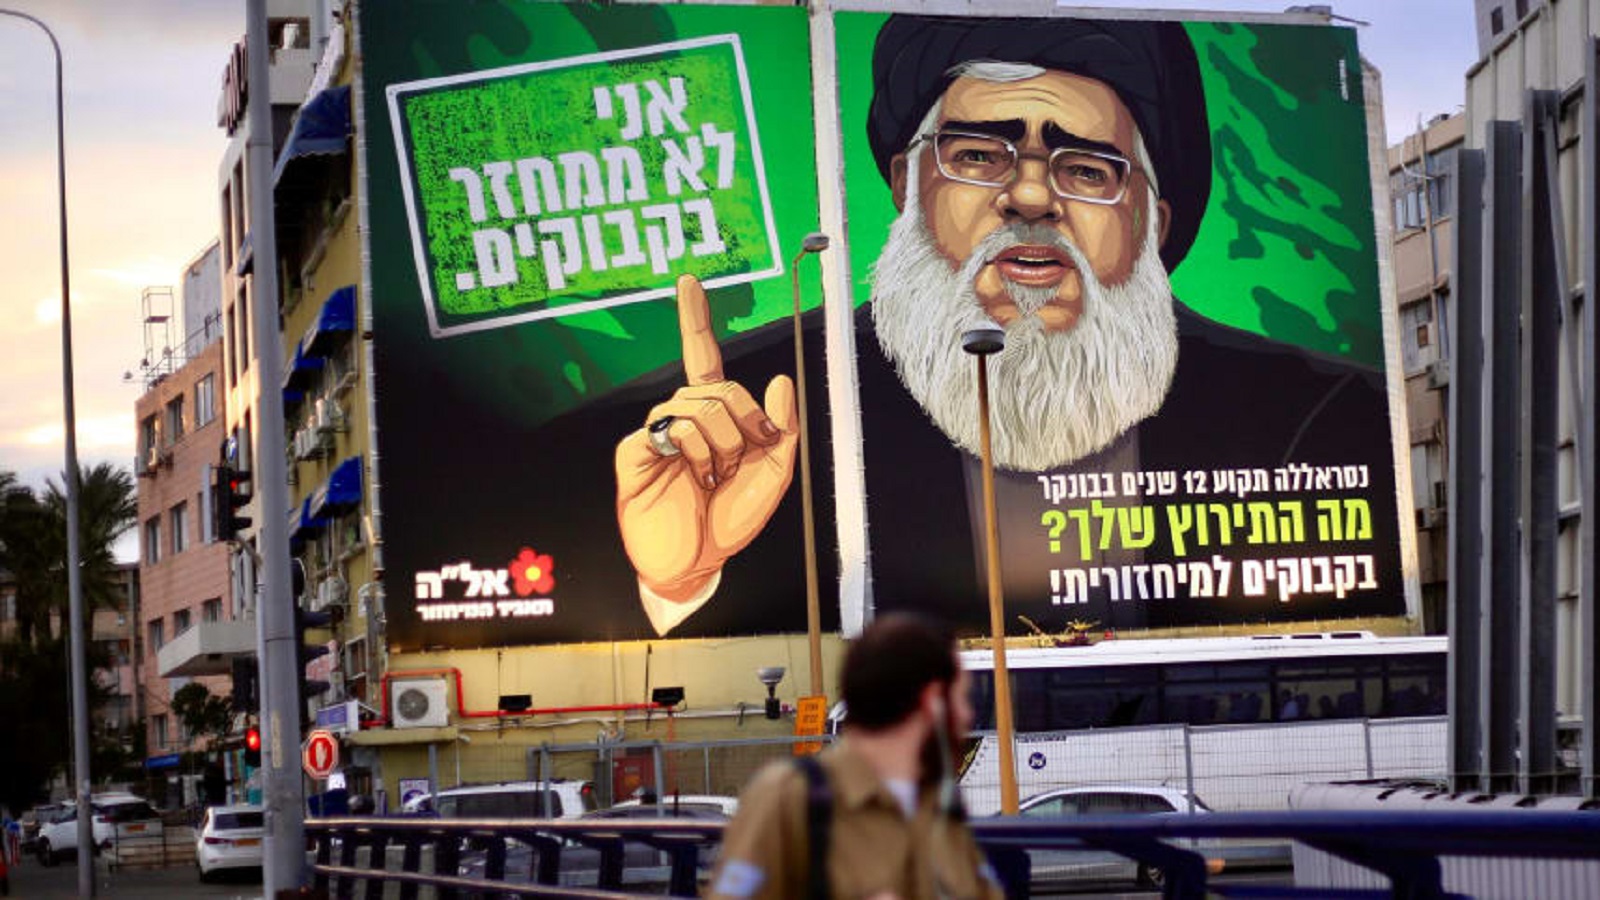 حملة دعائية إسرائيلية تستخدم صورة حسن نصرالله